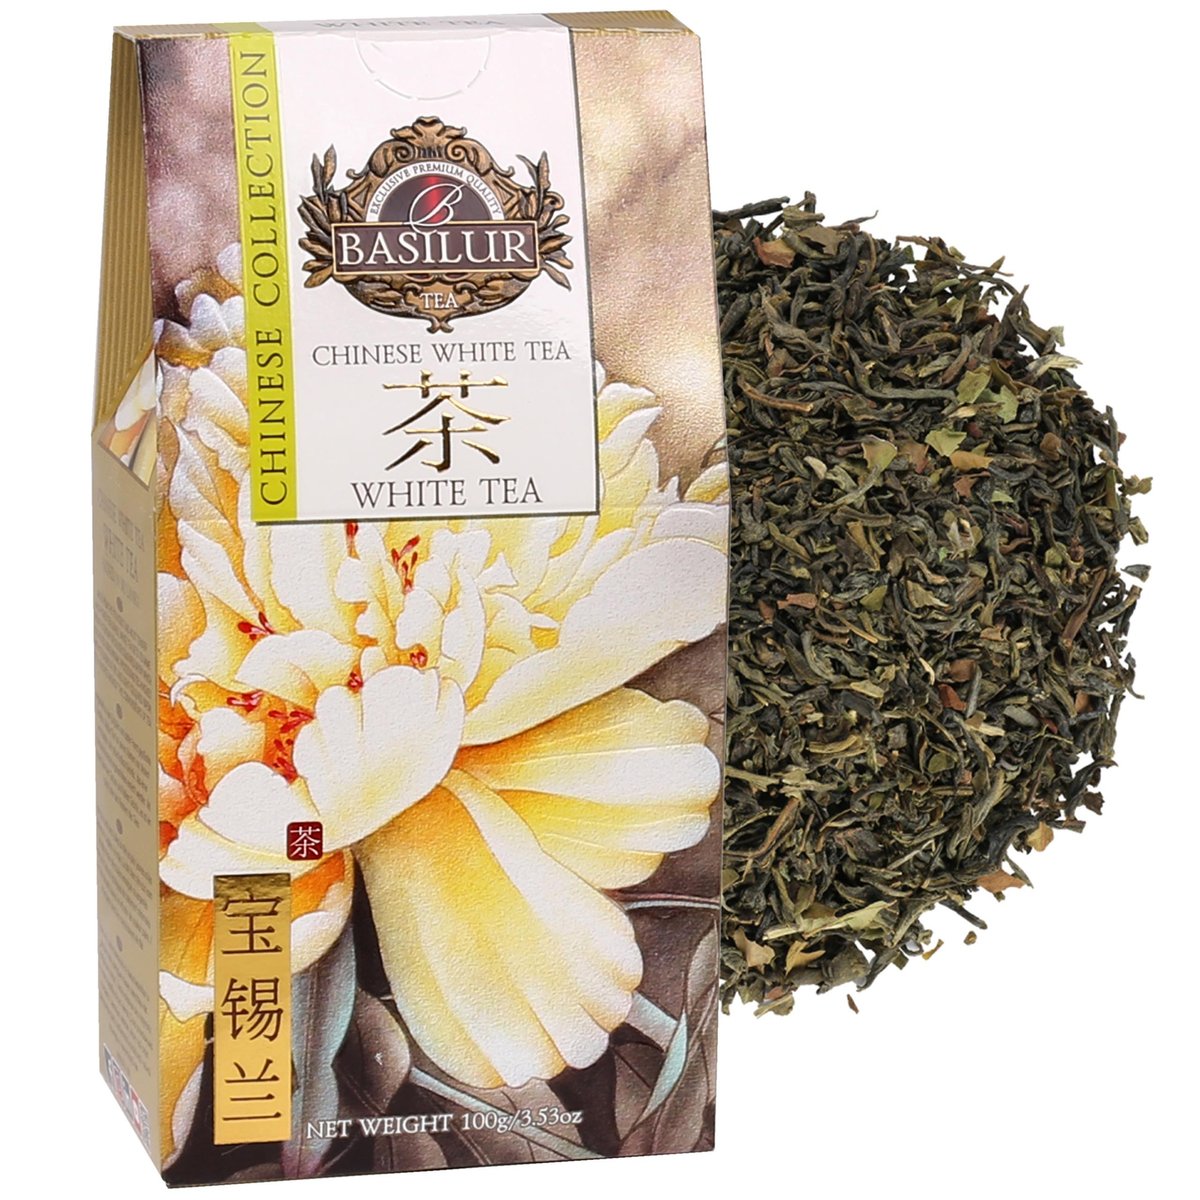 BASILUR Chinese White Tea - Biała liściasta herbata bez dodatków 100 g x1